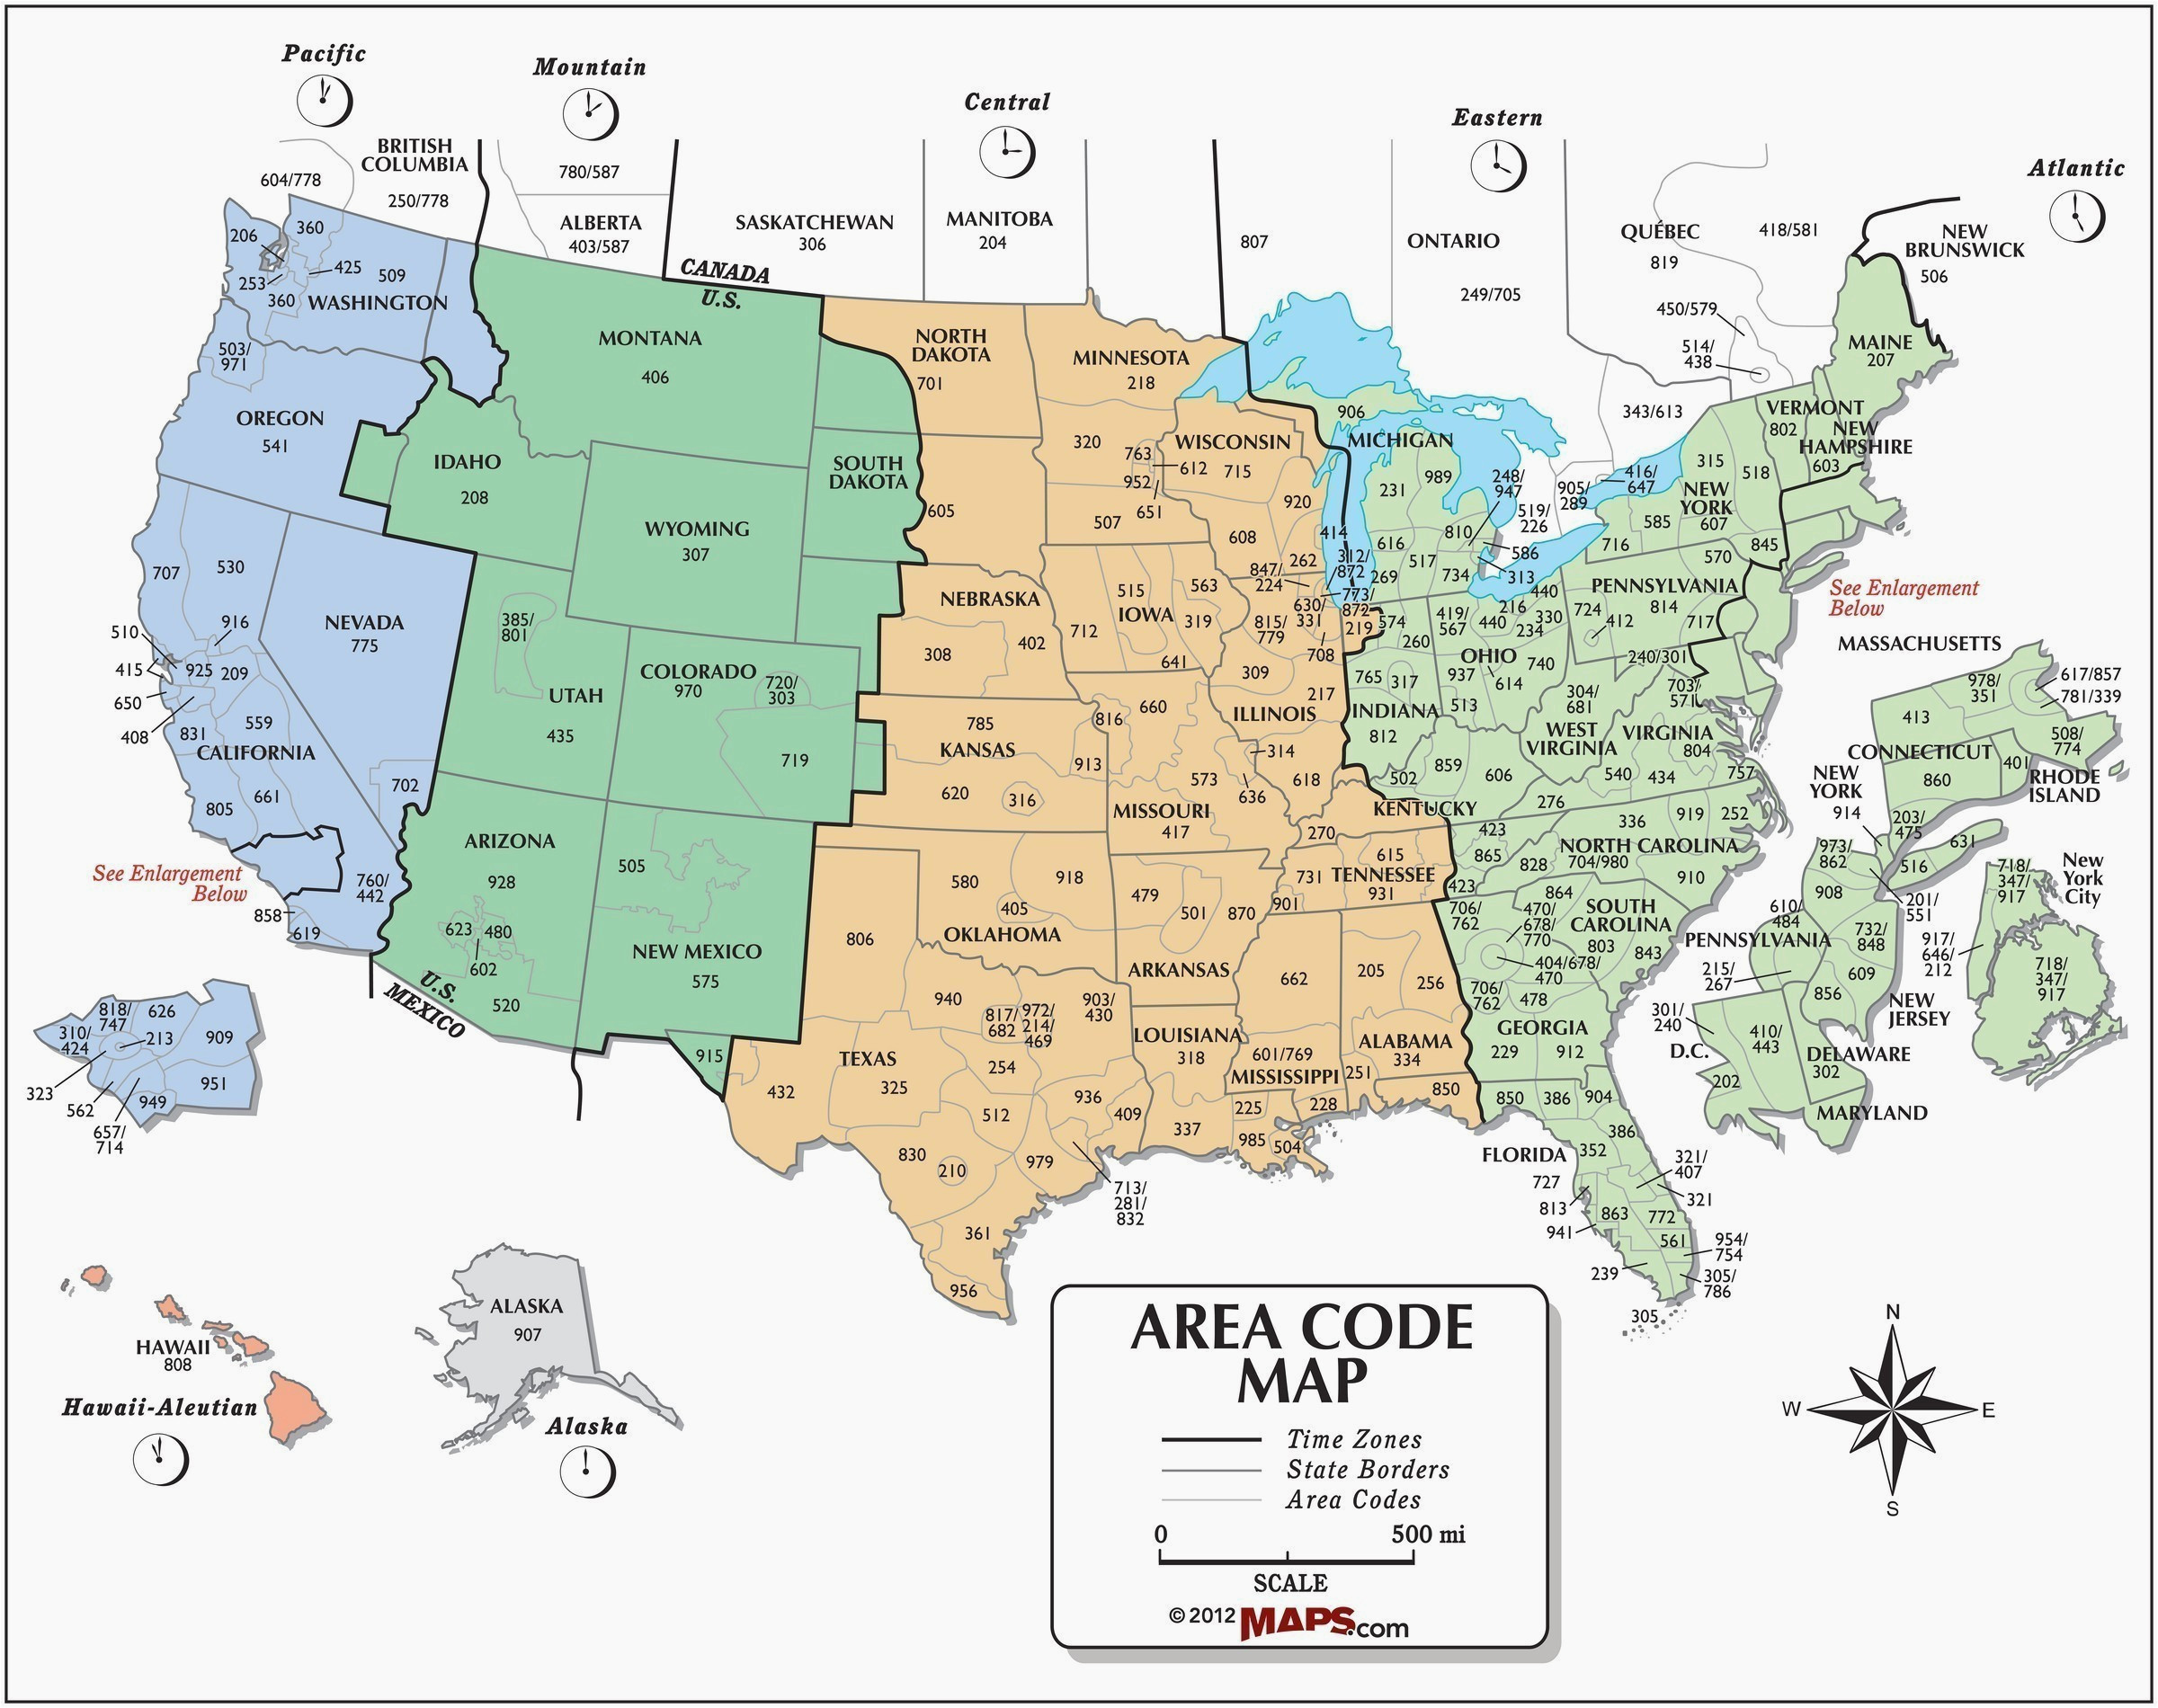 colorado springs zip codes map us cities zip code map new area code